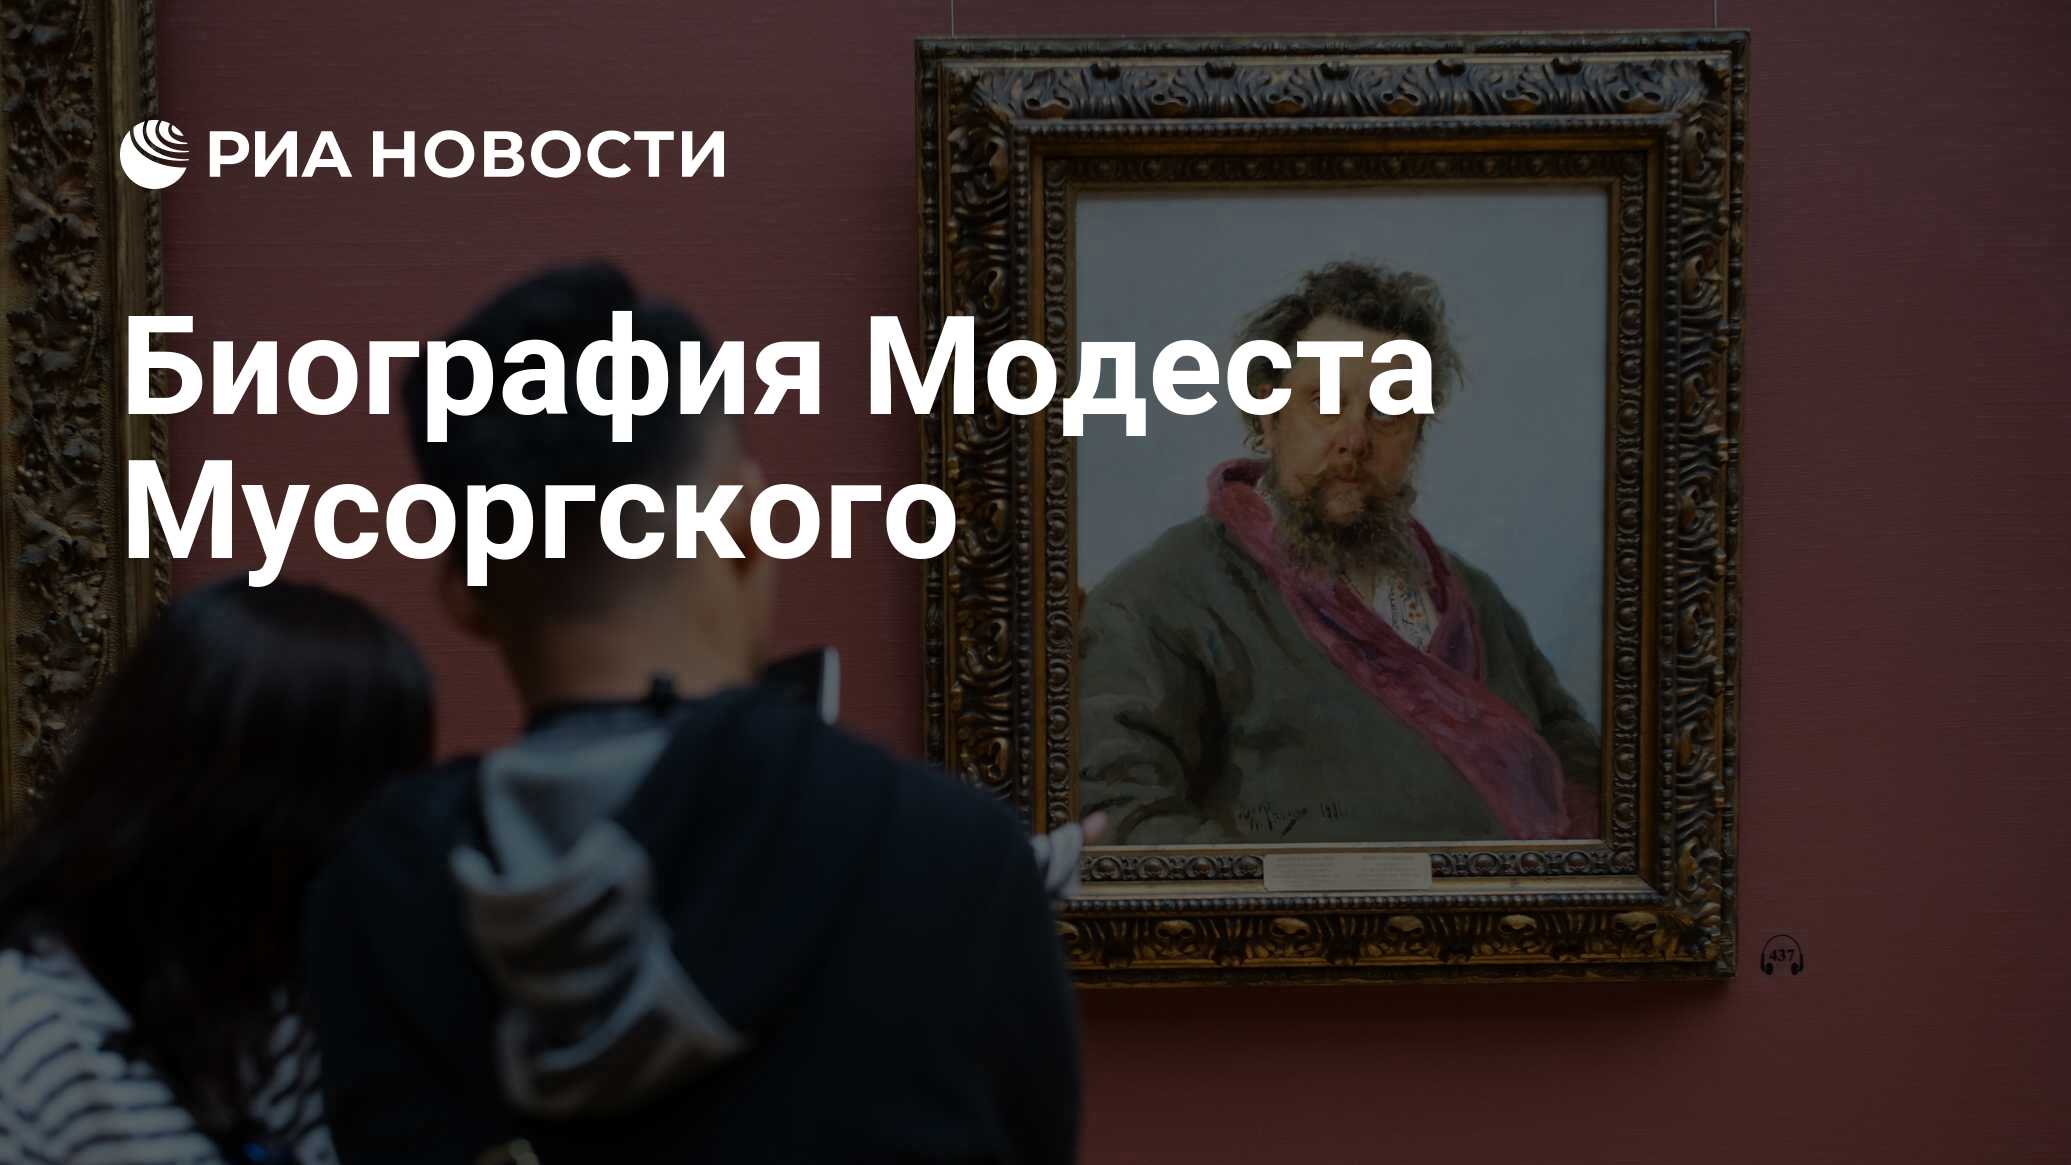 Биография Модеста Мусоргского - РИА Новости, 21.03.2019